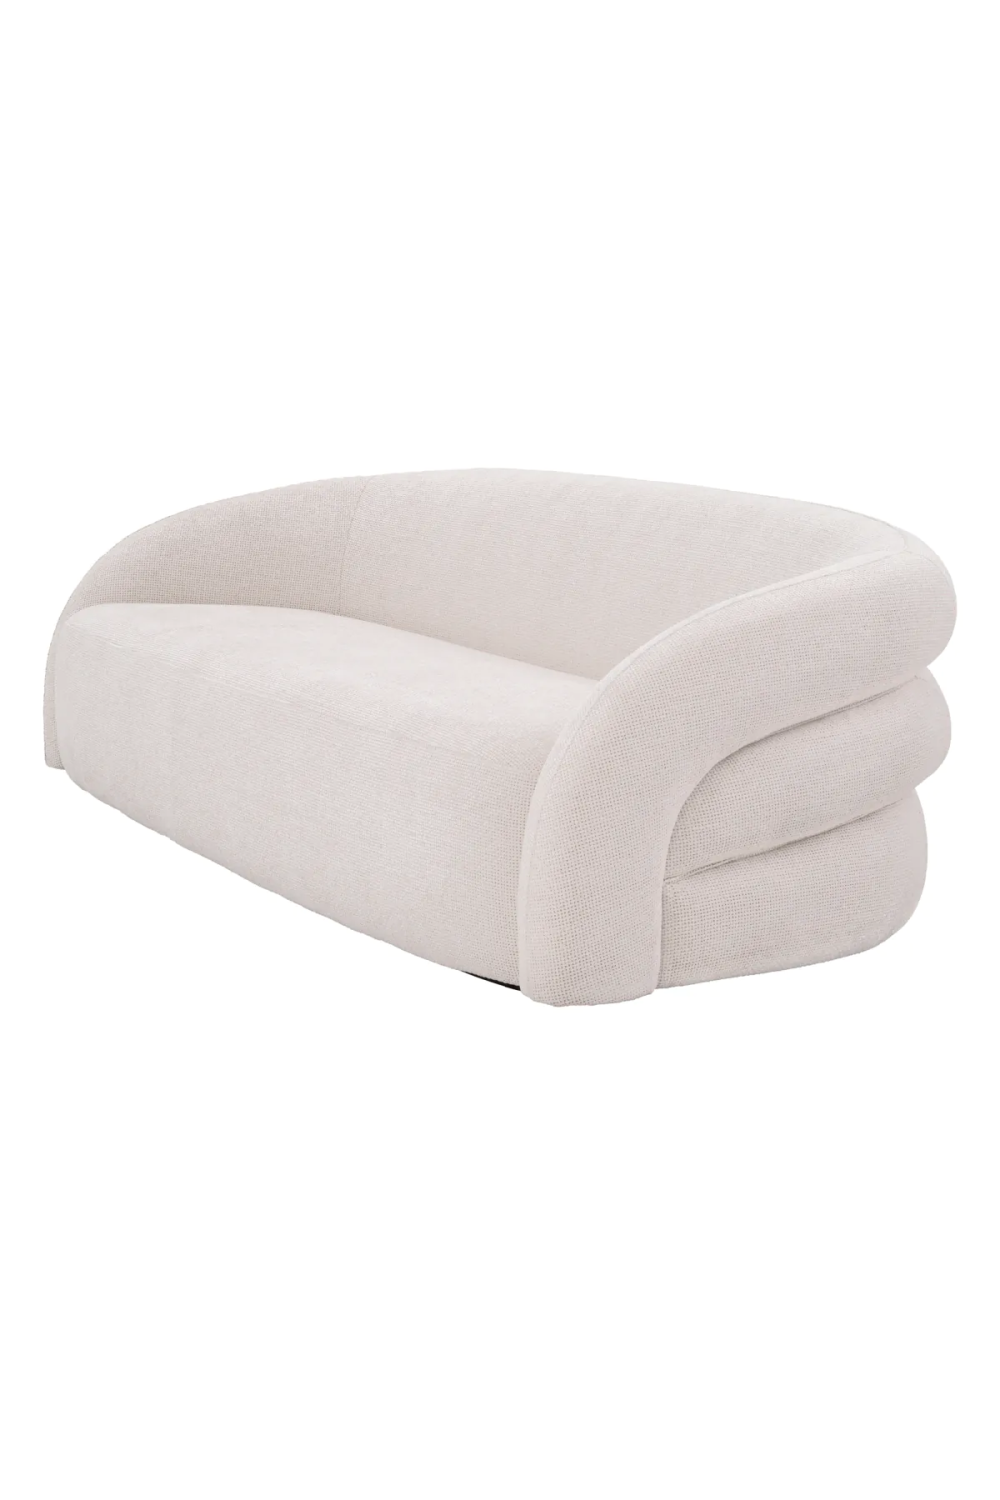 White Modern Sofa | Eichholtz Novelle | Oroa.com